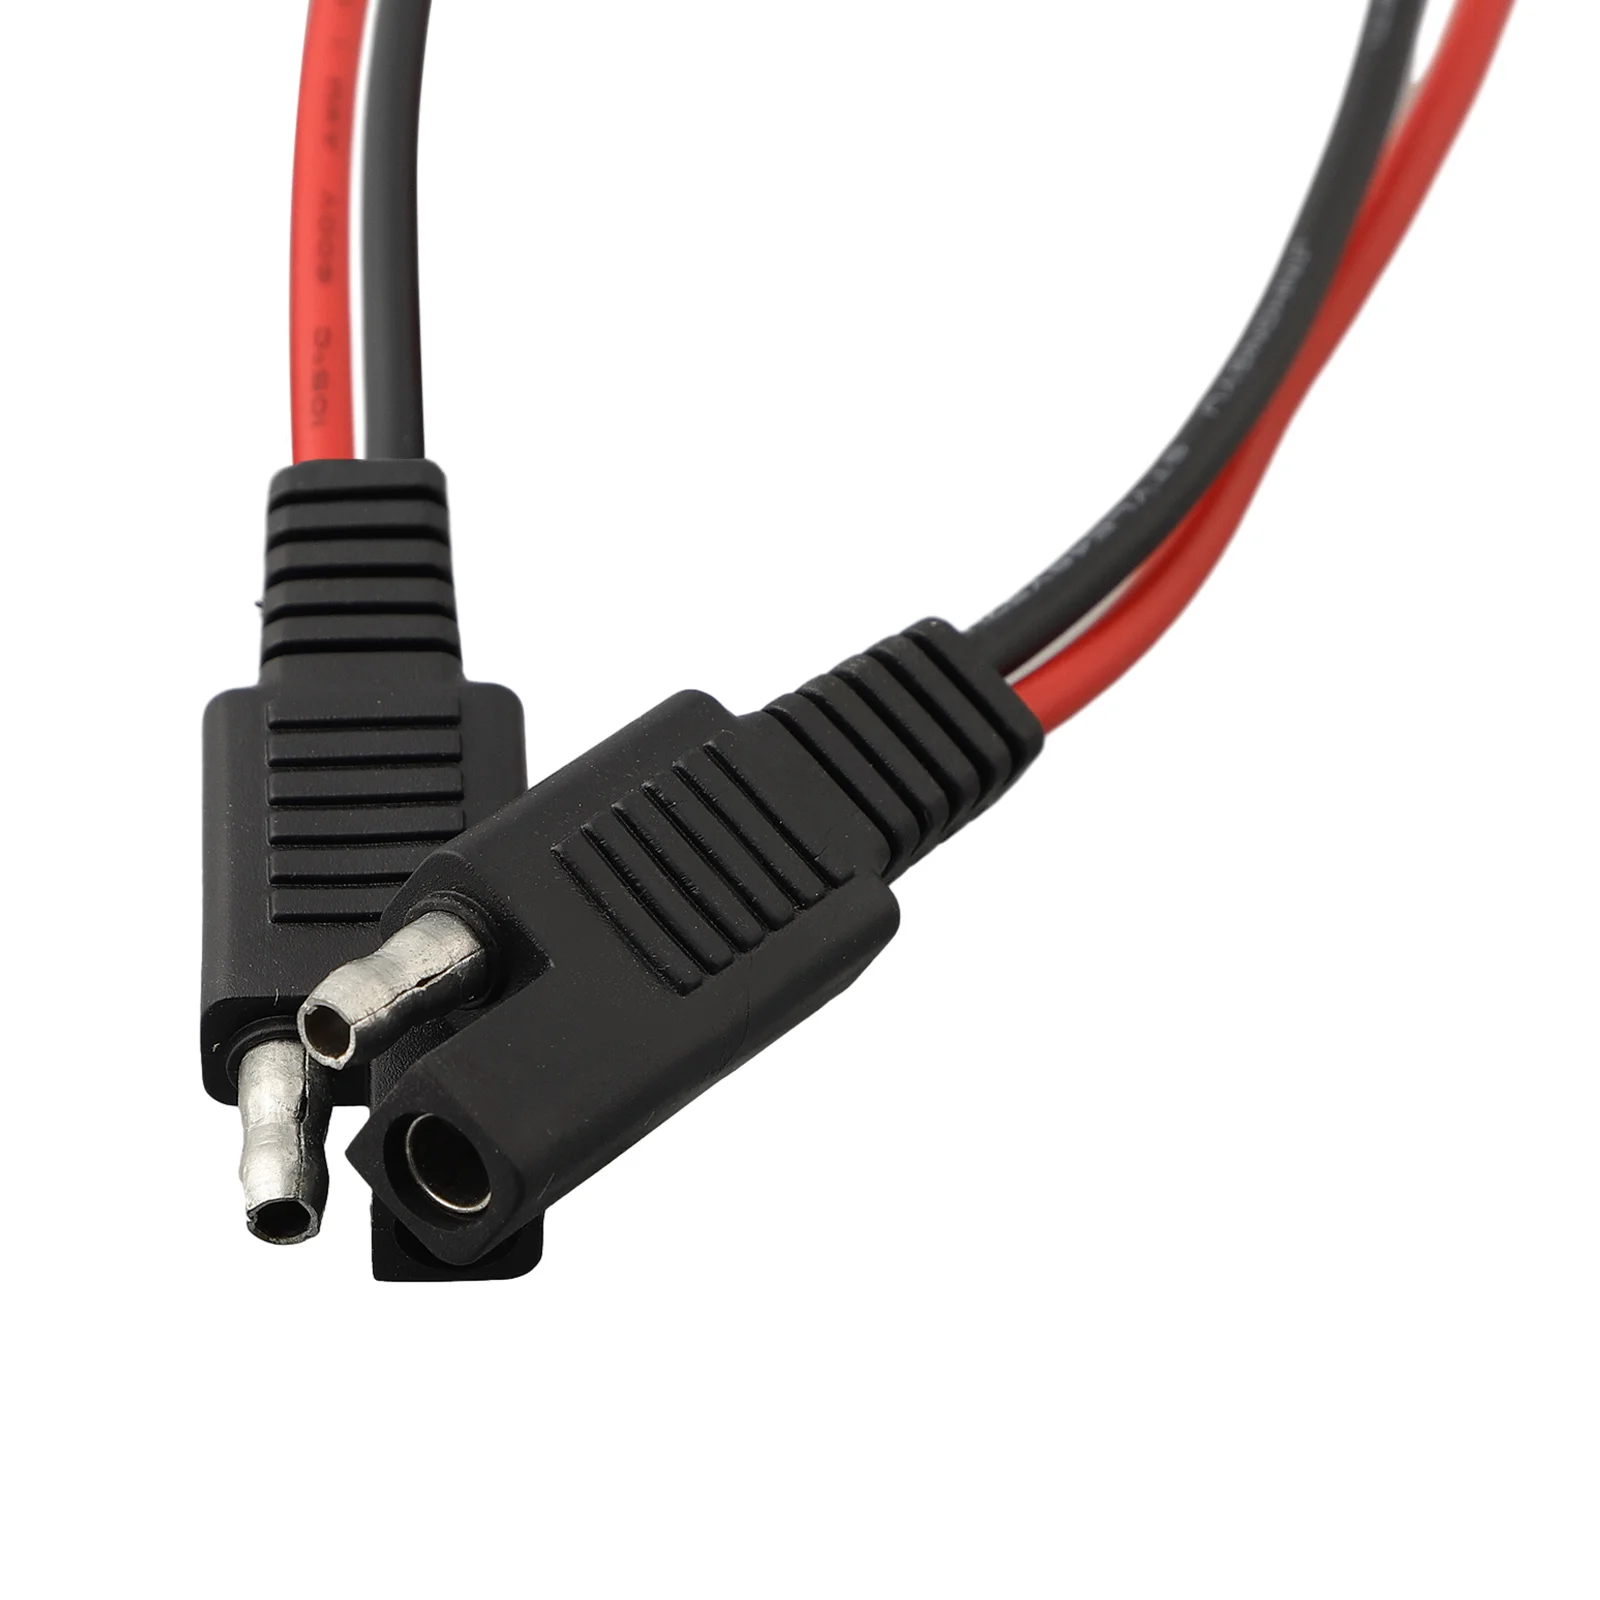 

Односторонний Удлинительный кабель SAE, медная проволока 18AWG, длина 0, 5 футов, отличная гибкость для простой установки